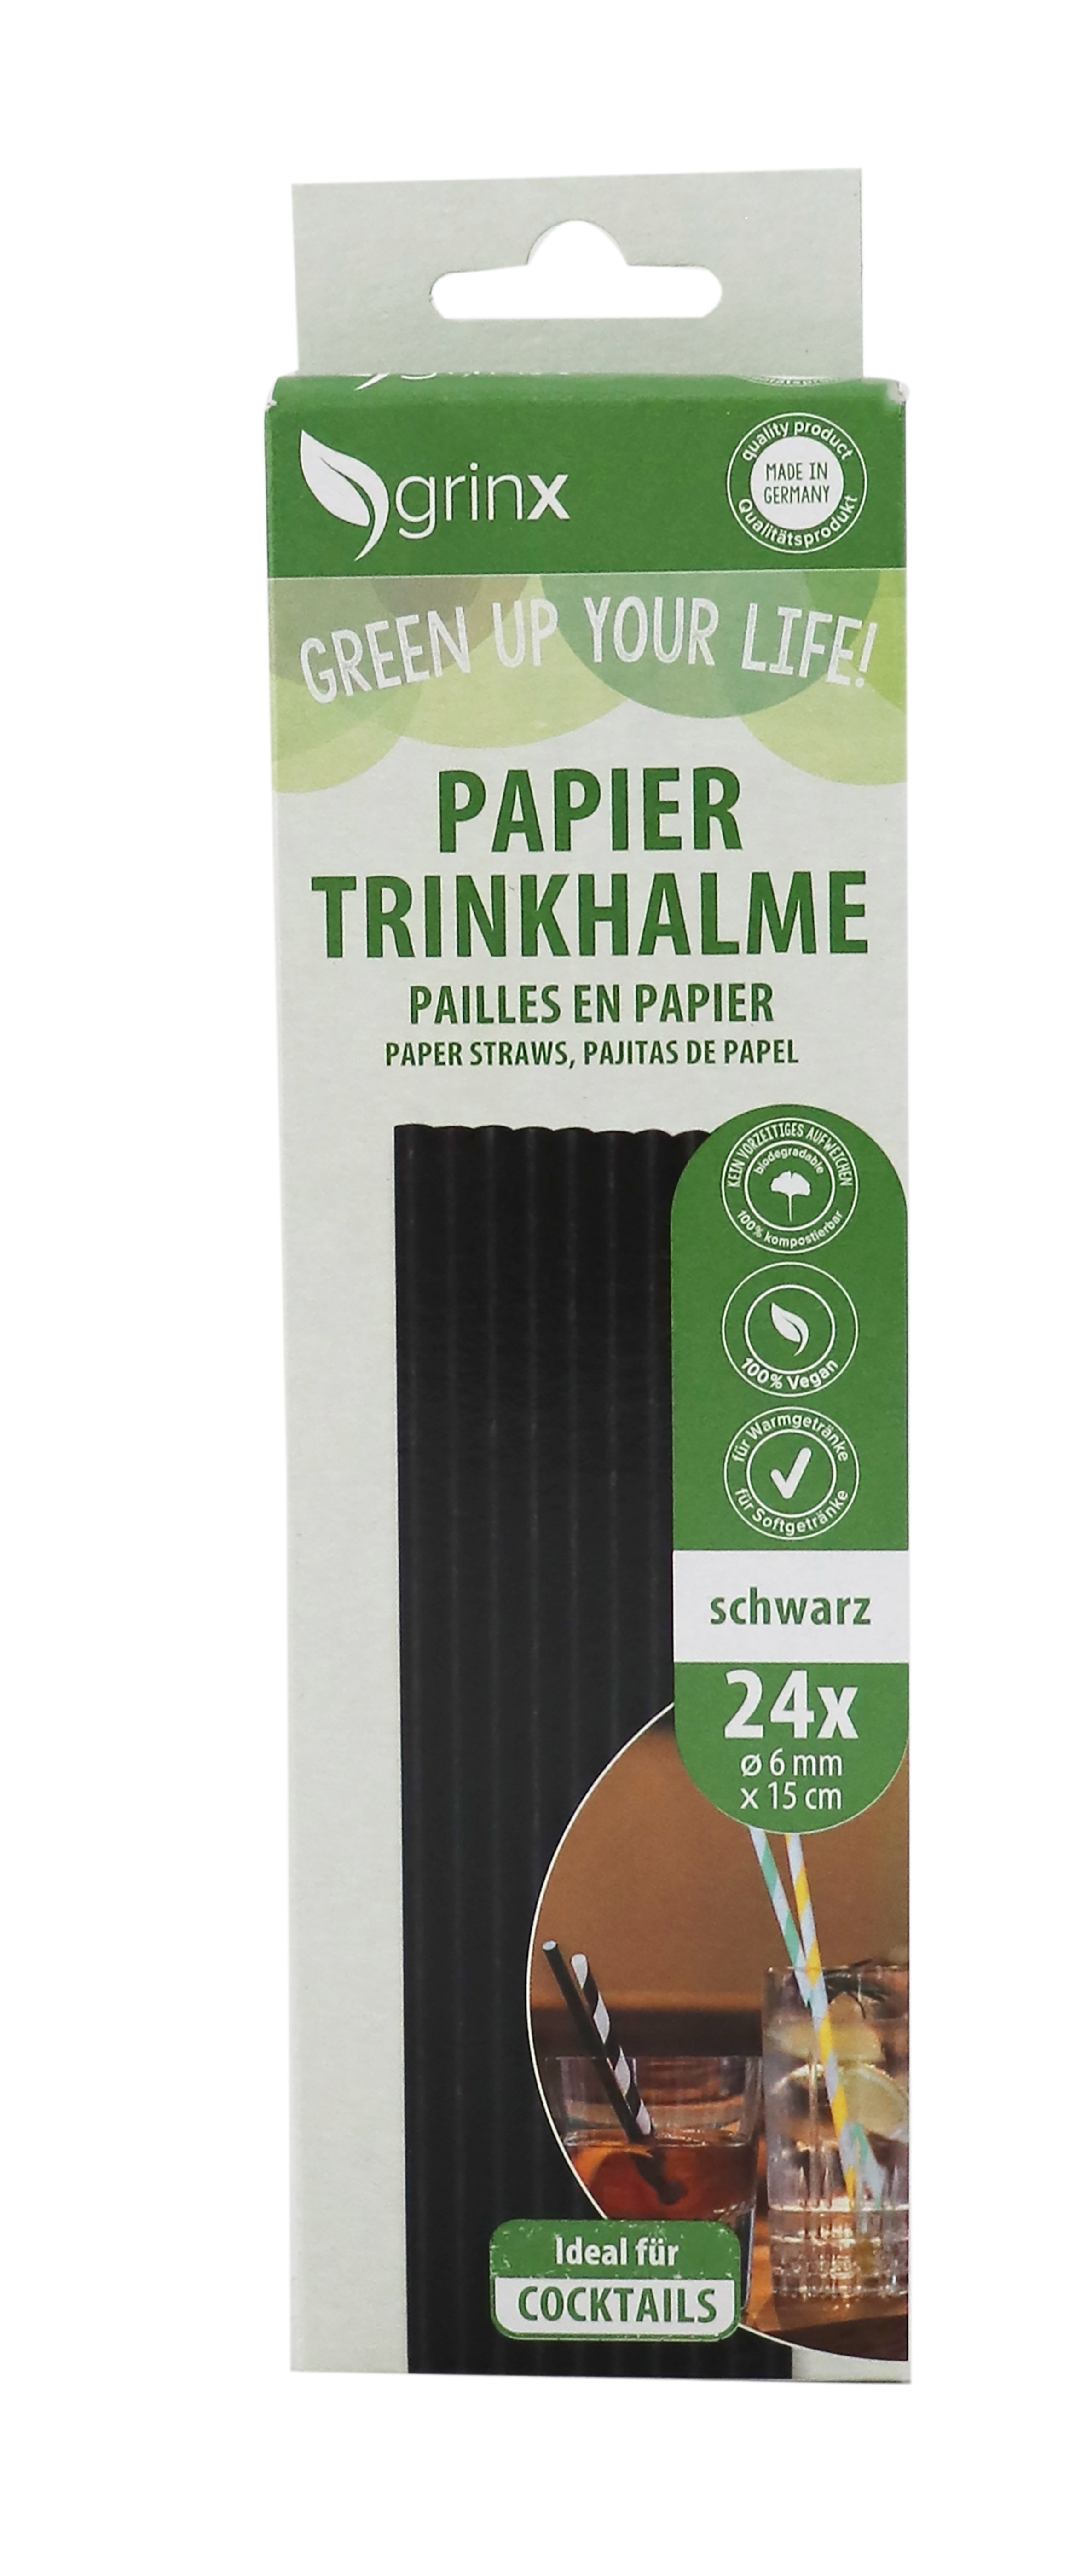 grinx  Papier trinkhalme Schwarz 6mmx15cm 2x24stück 